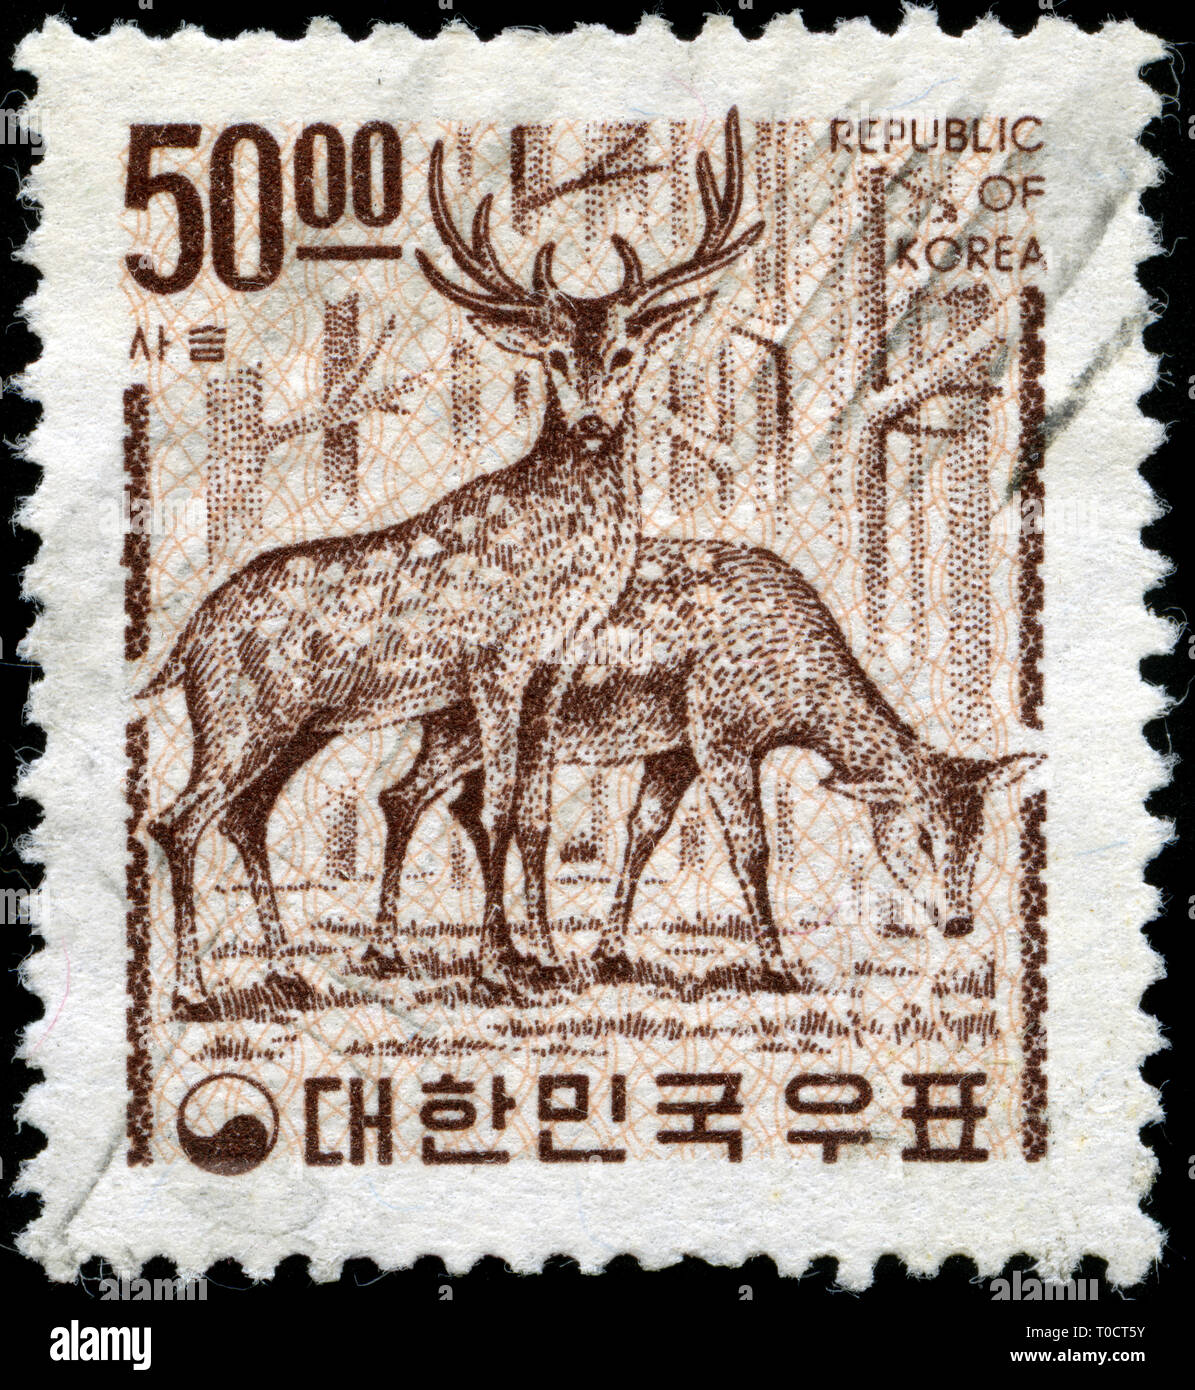 Timbre-poste de la Corée du Sud dans le pays - Vous y trouverez la série des symboles émis en 1967 Banque D'Images